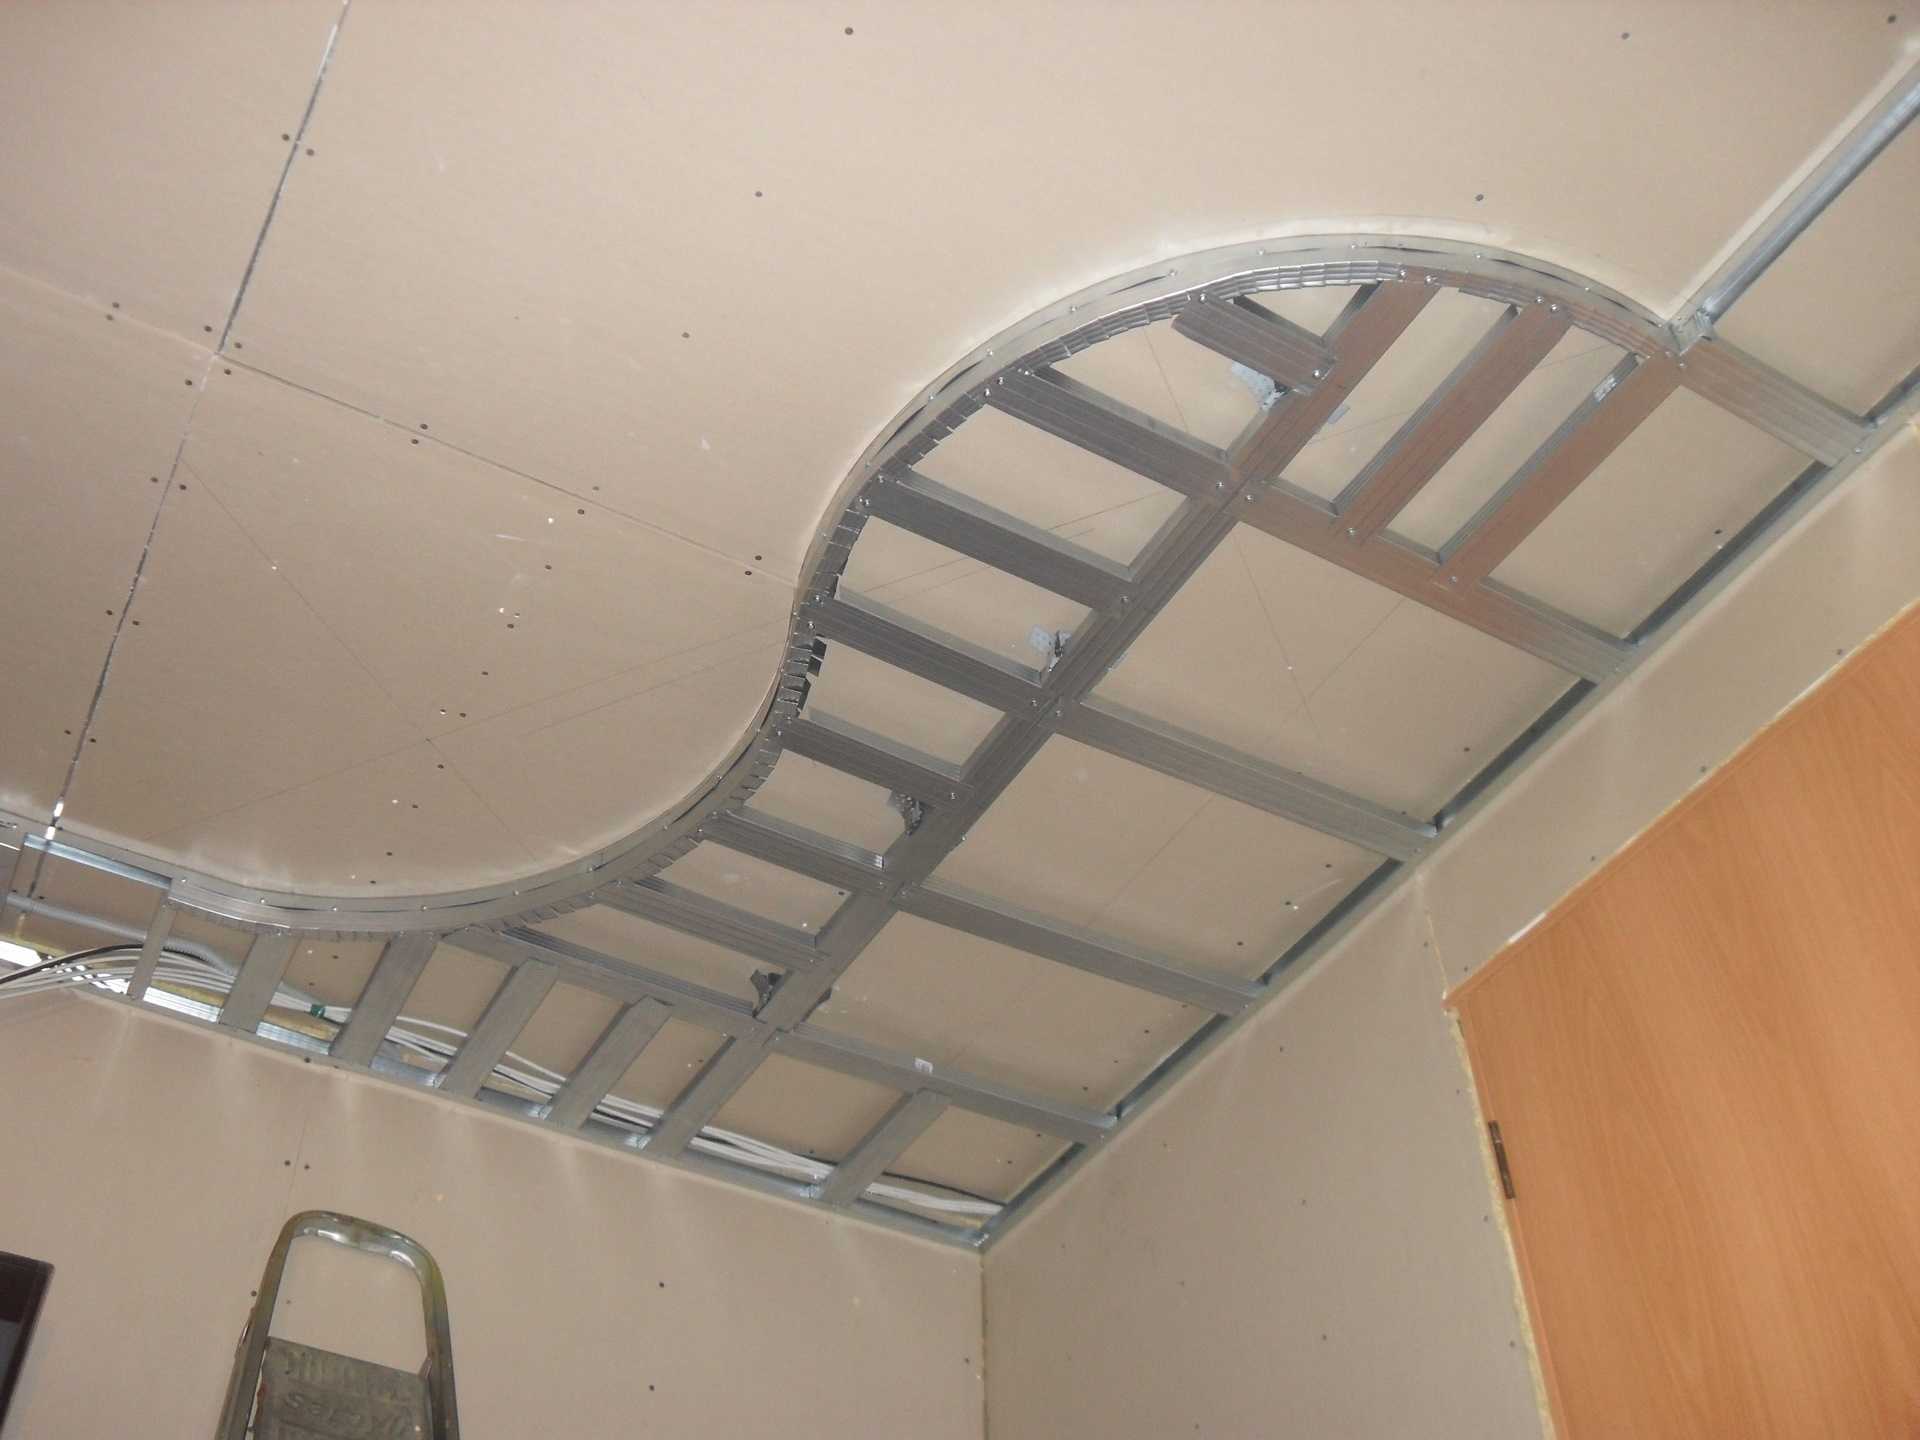 Одноуровневый потолок из гипсокартона своими руками: как сделать потолок из гипсокартона самостоятельно